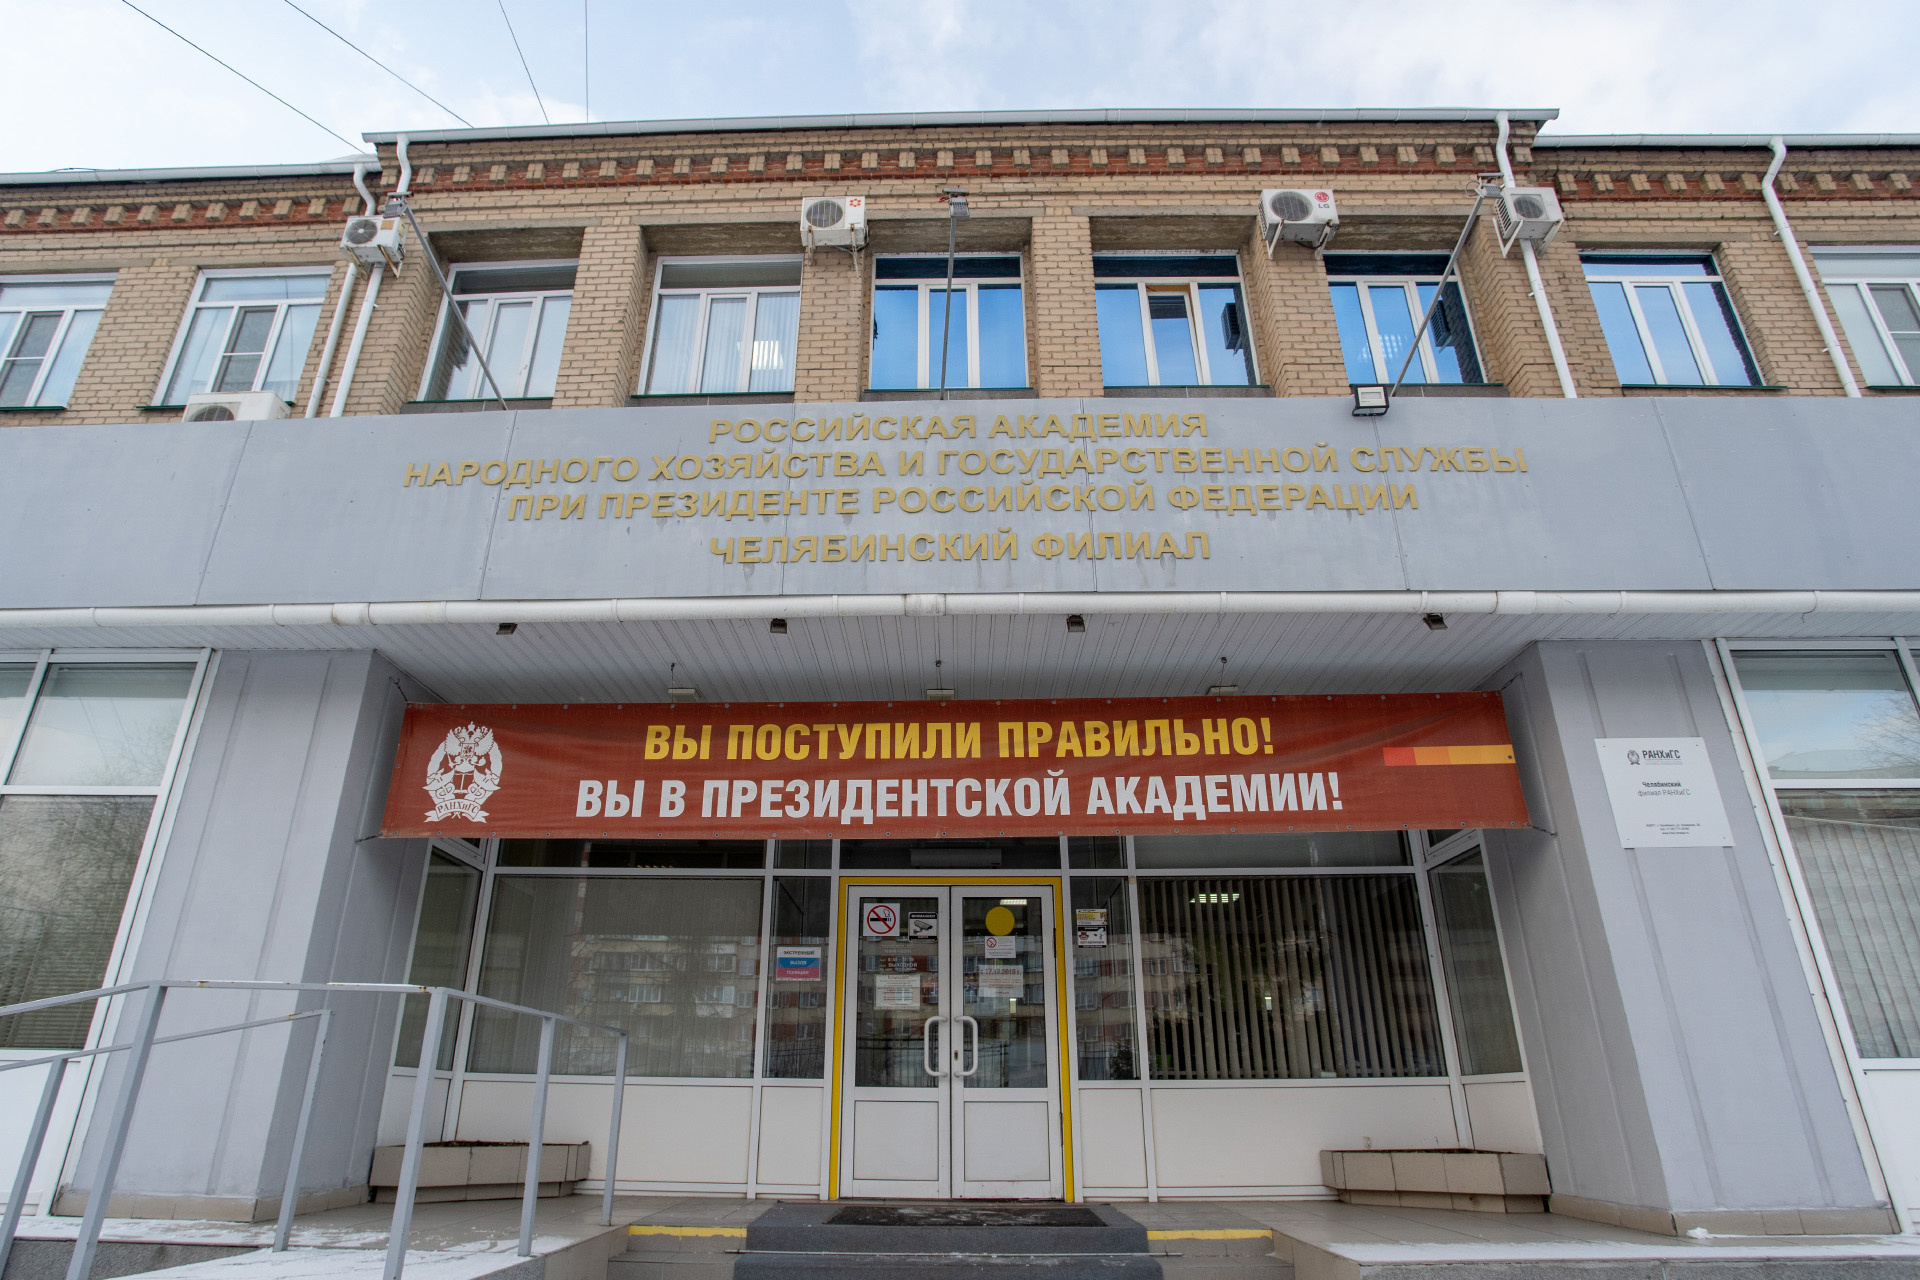 РАНХиГС — это крупнейшее учебное заведение в России, состоящее из более чем 50 филиалов от Калининграда до Владивостока